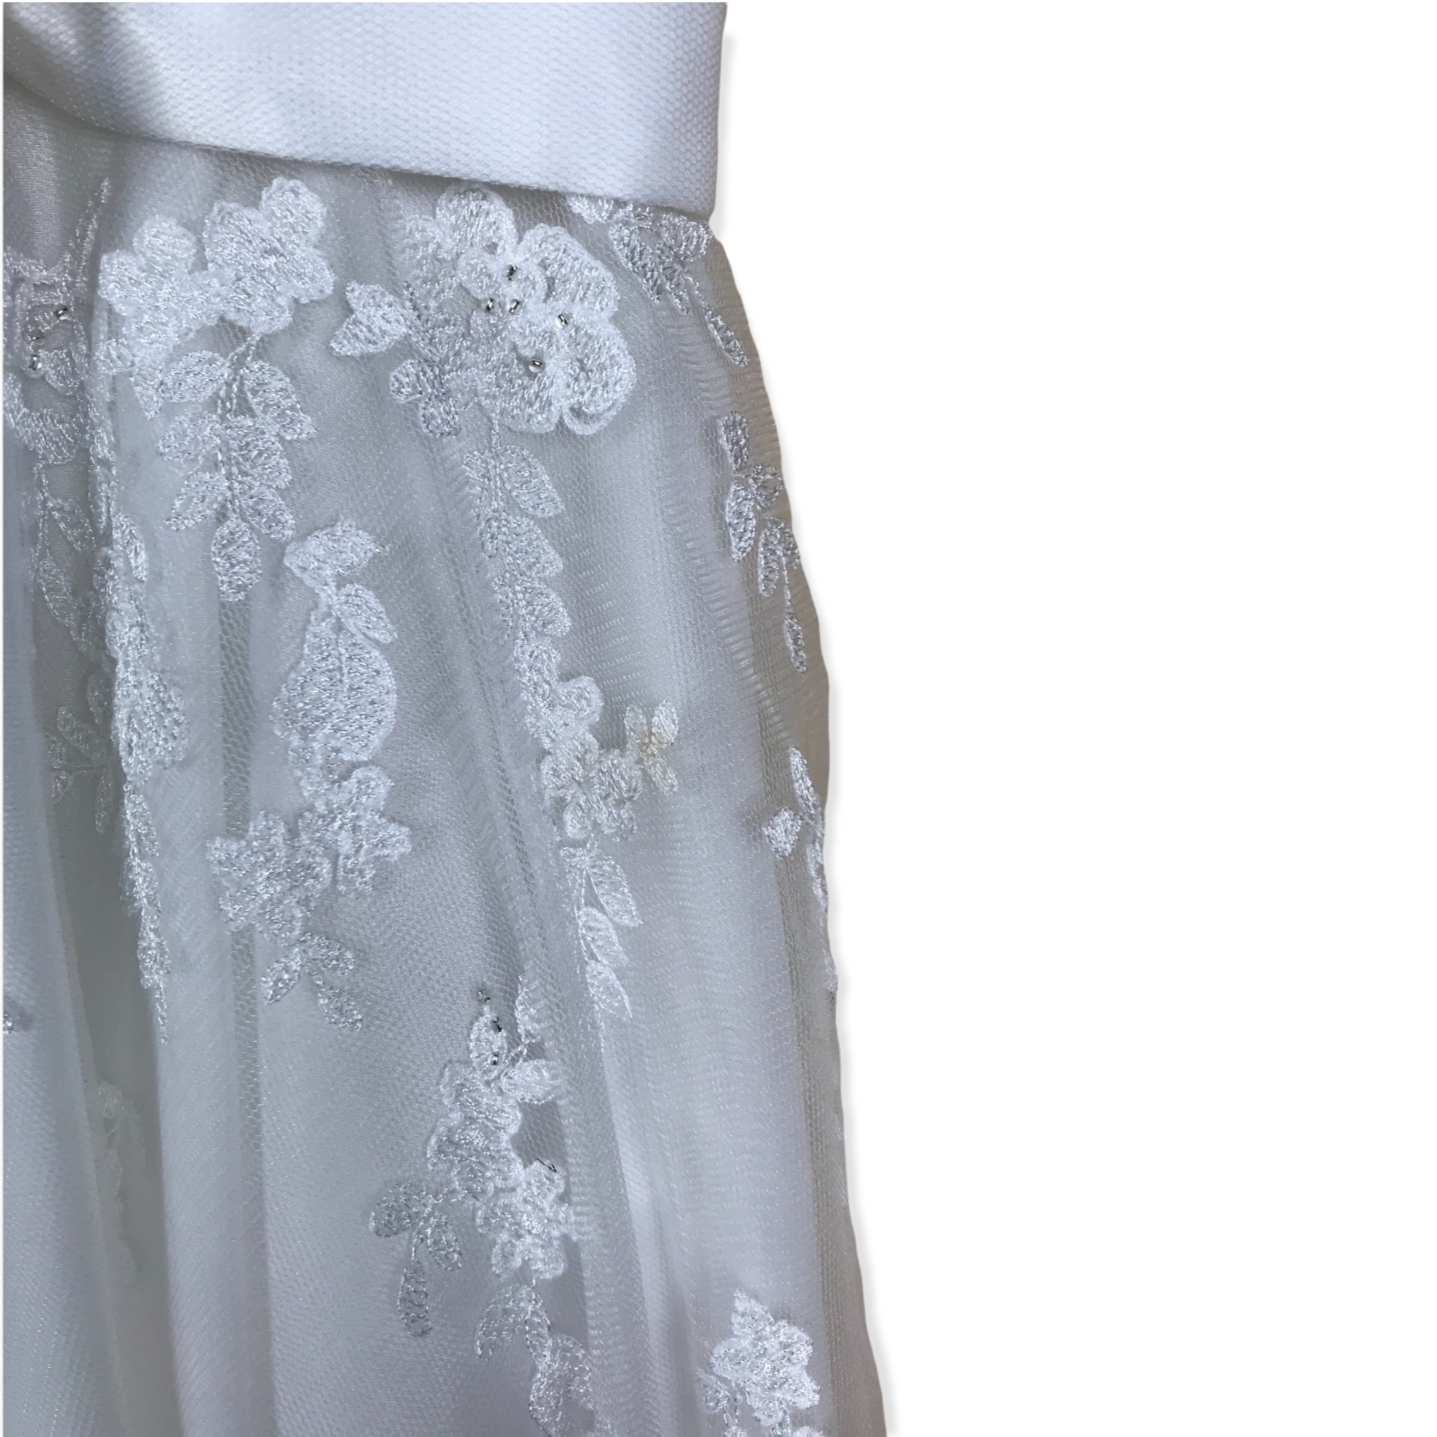 RJR. John Rocha White Embroidery Detailed Tulle Formal Dress Age 9